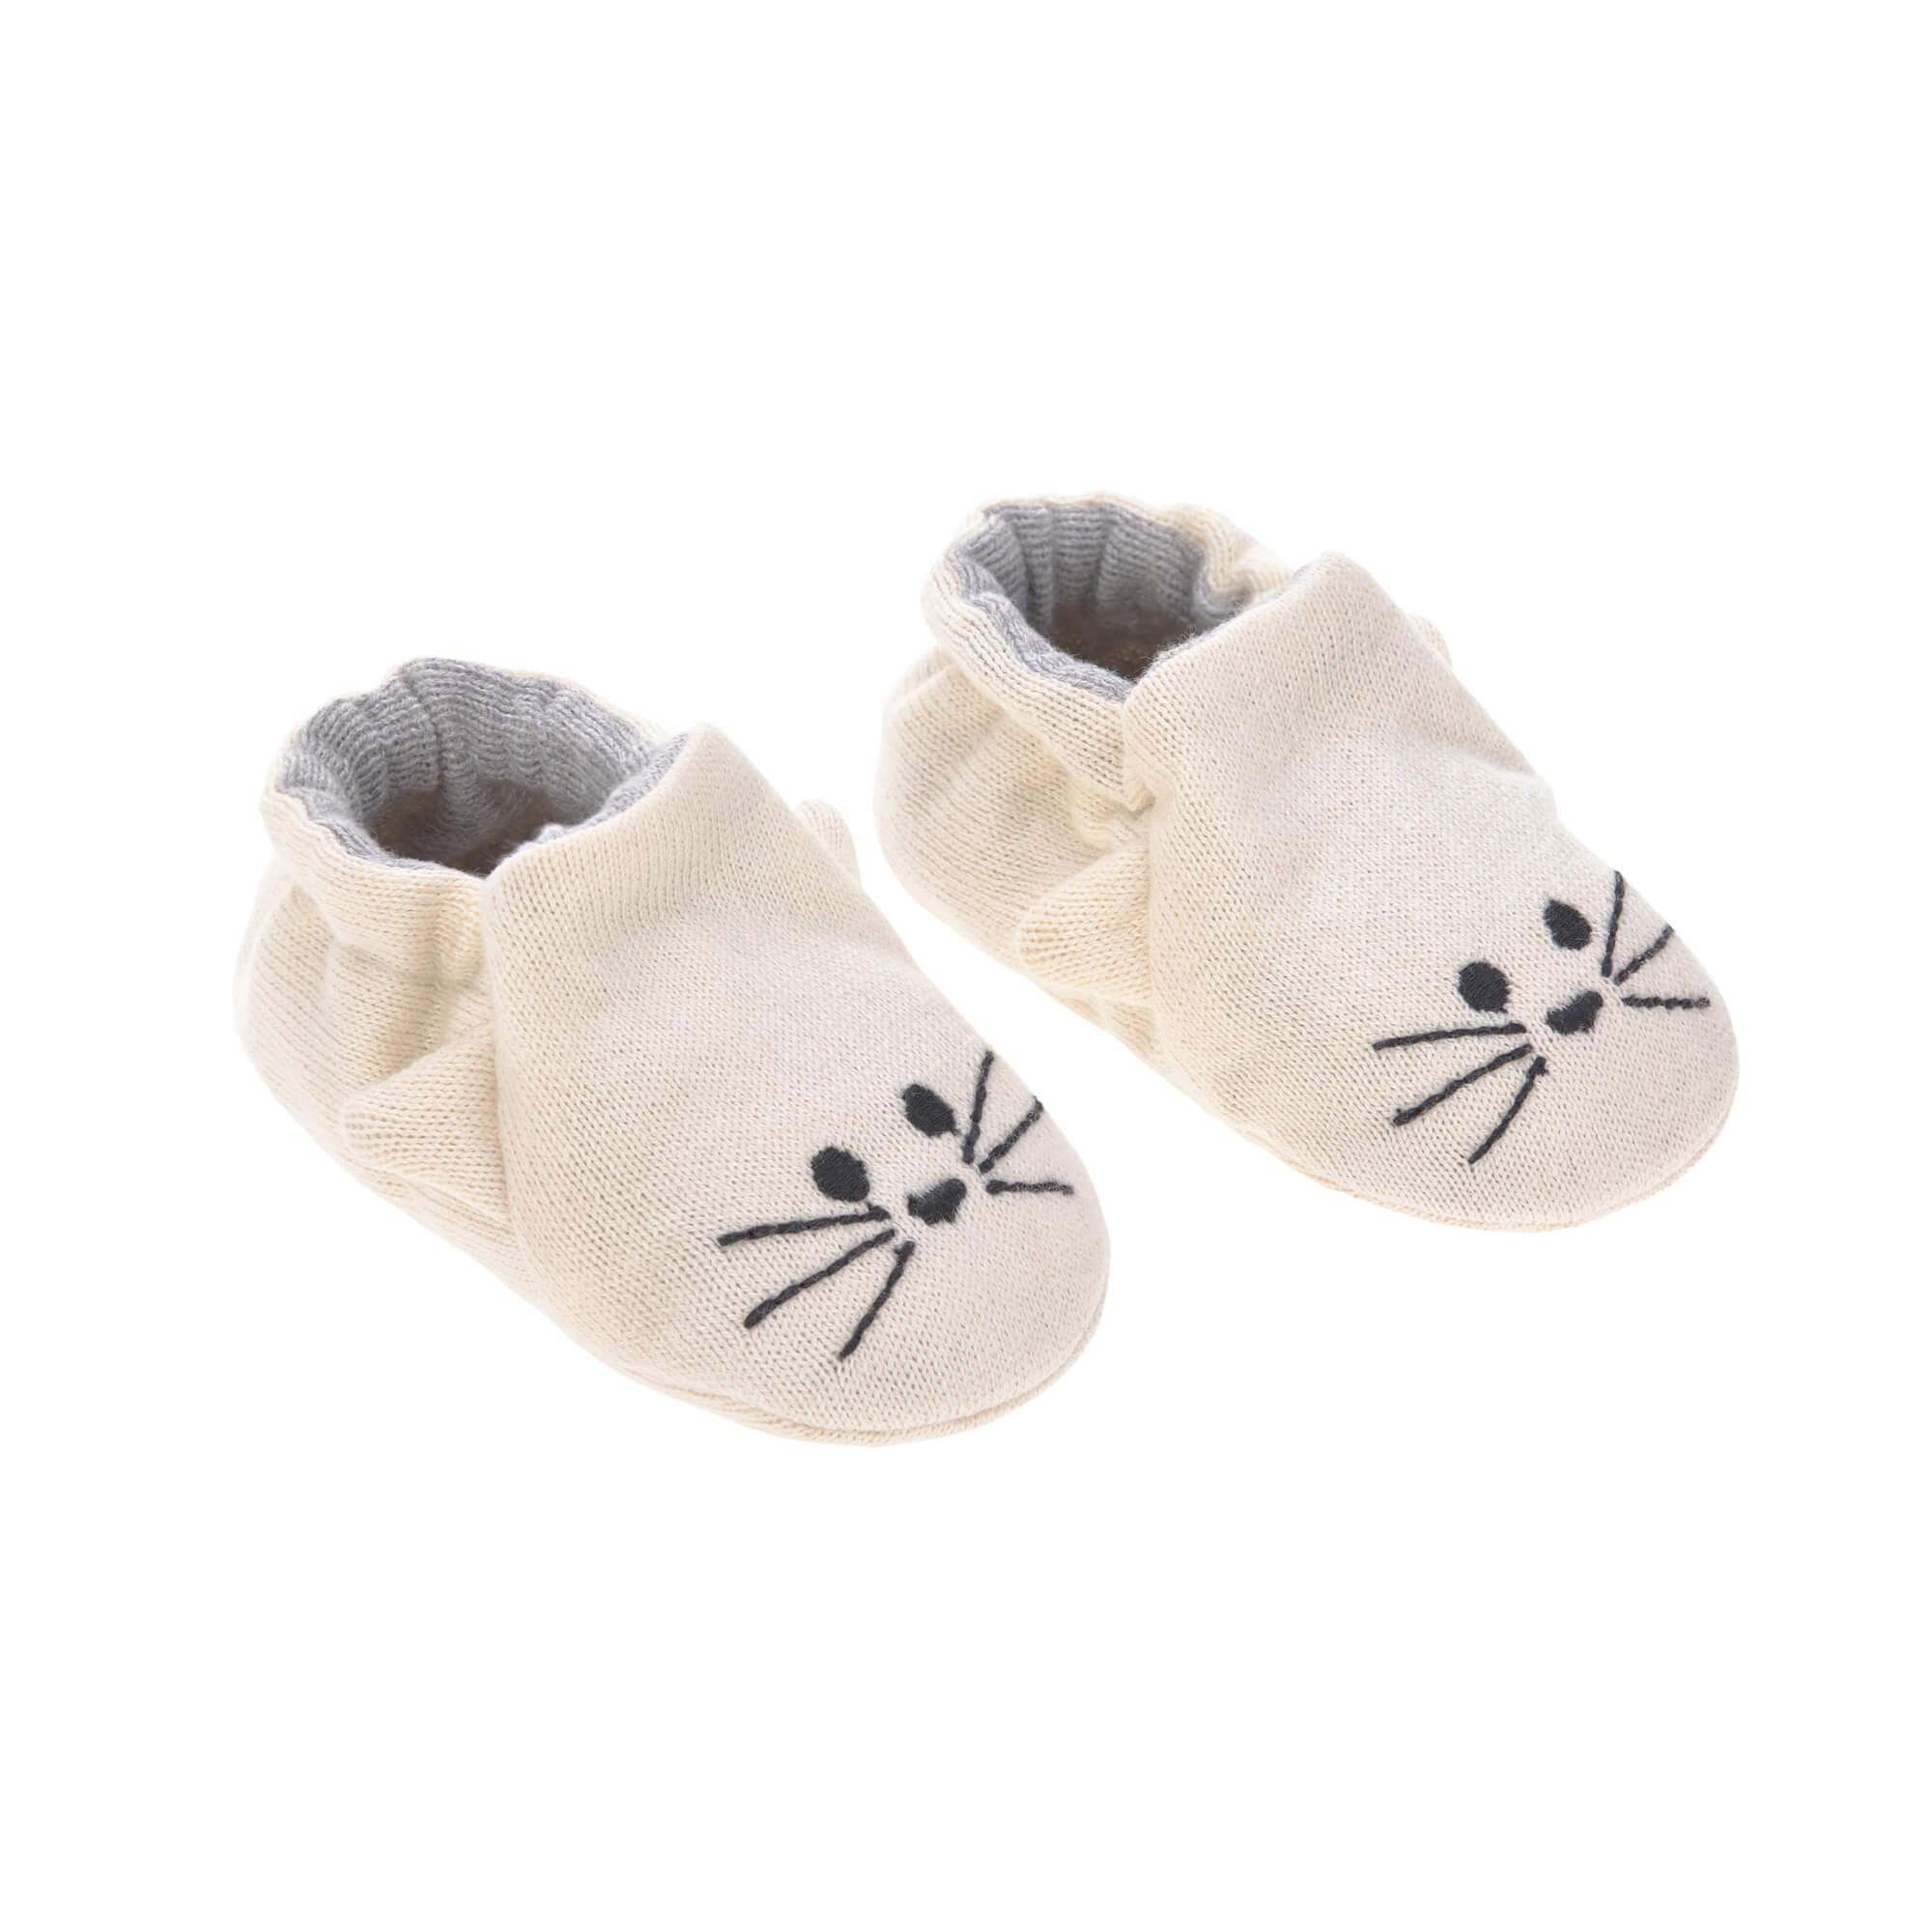 Lassig - Baby shoes gots little chums cat